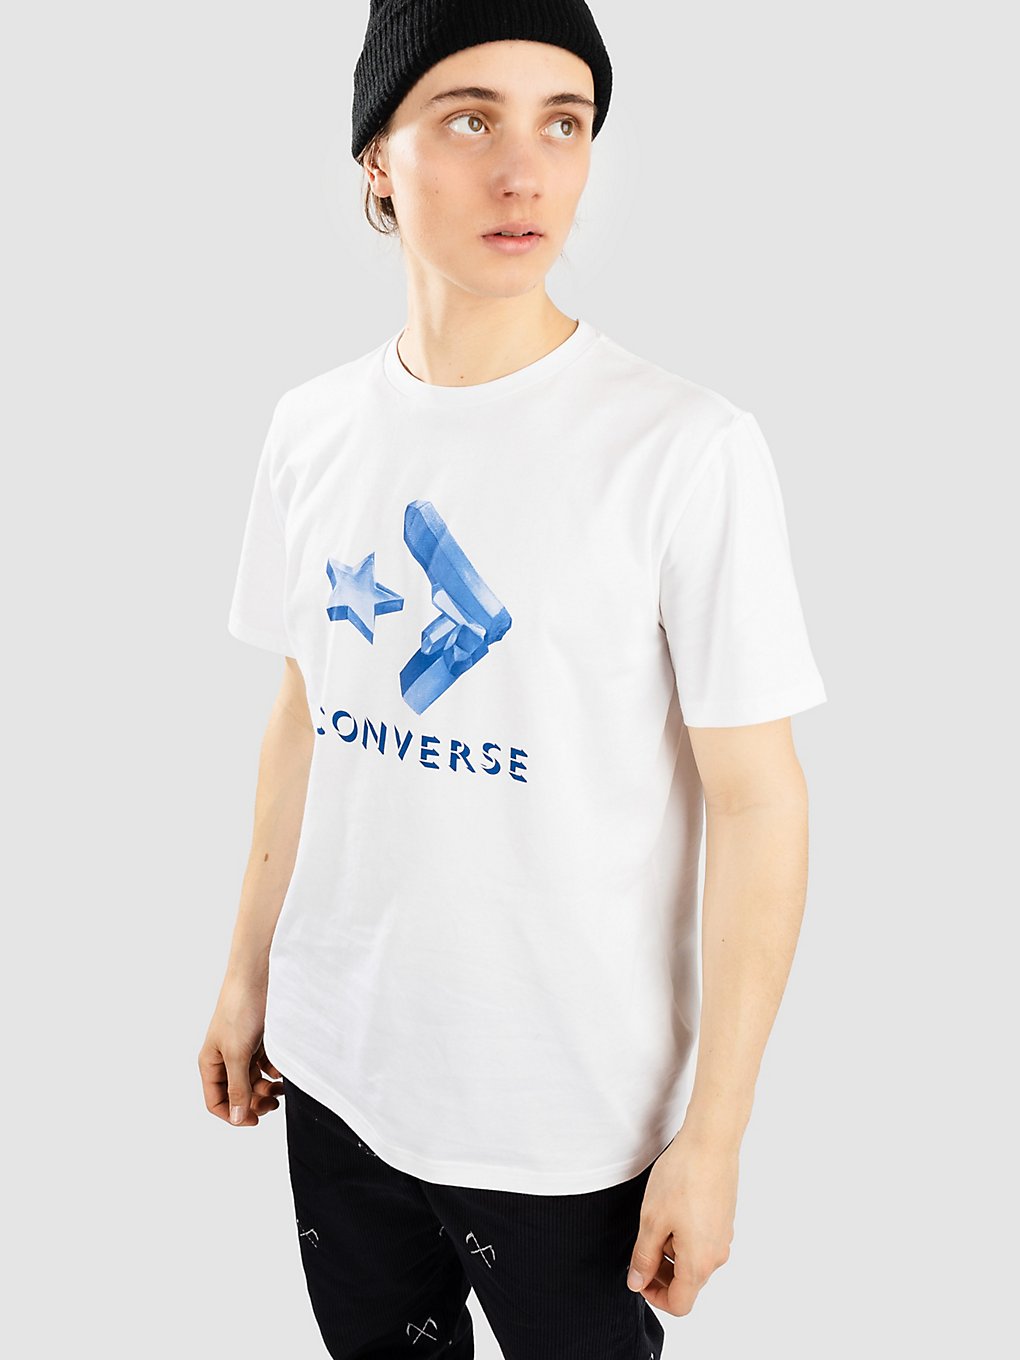 Converse Crystals T-Shirt white kaufen